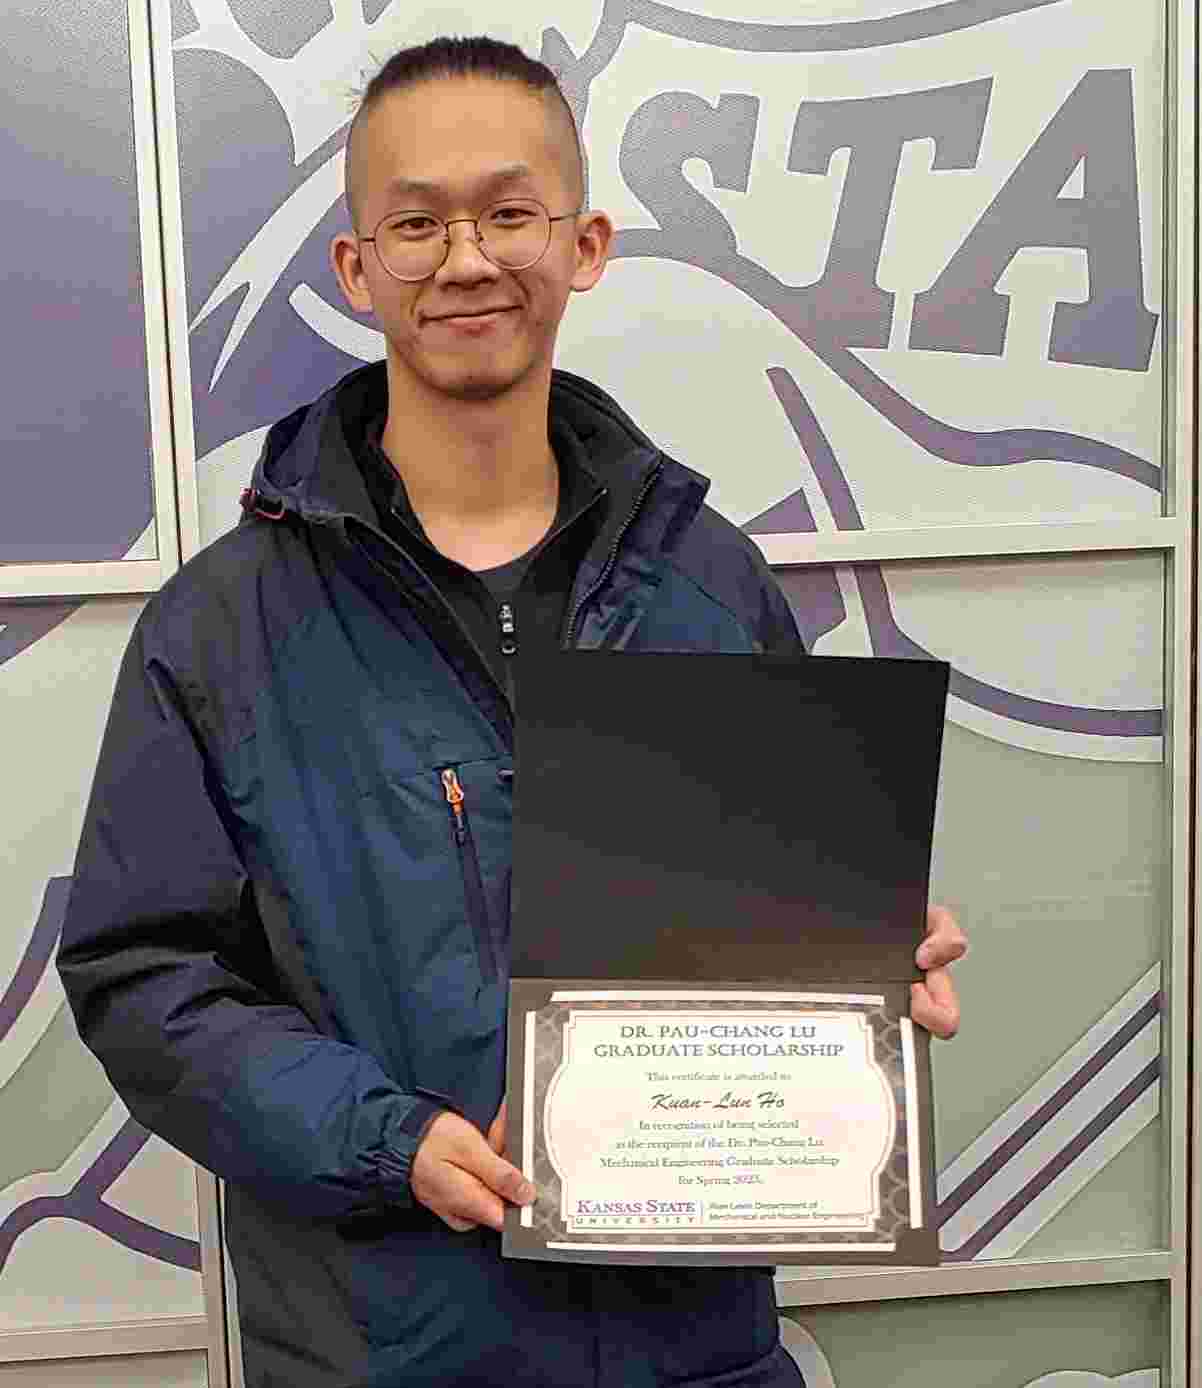 Kuan-Lun Ho, recipient of the Pau-Chang Lu Mechanical Engineering Graduate Scholarship